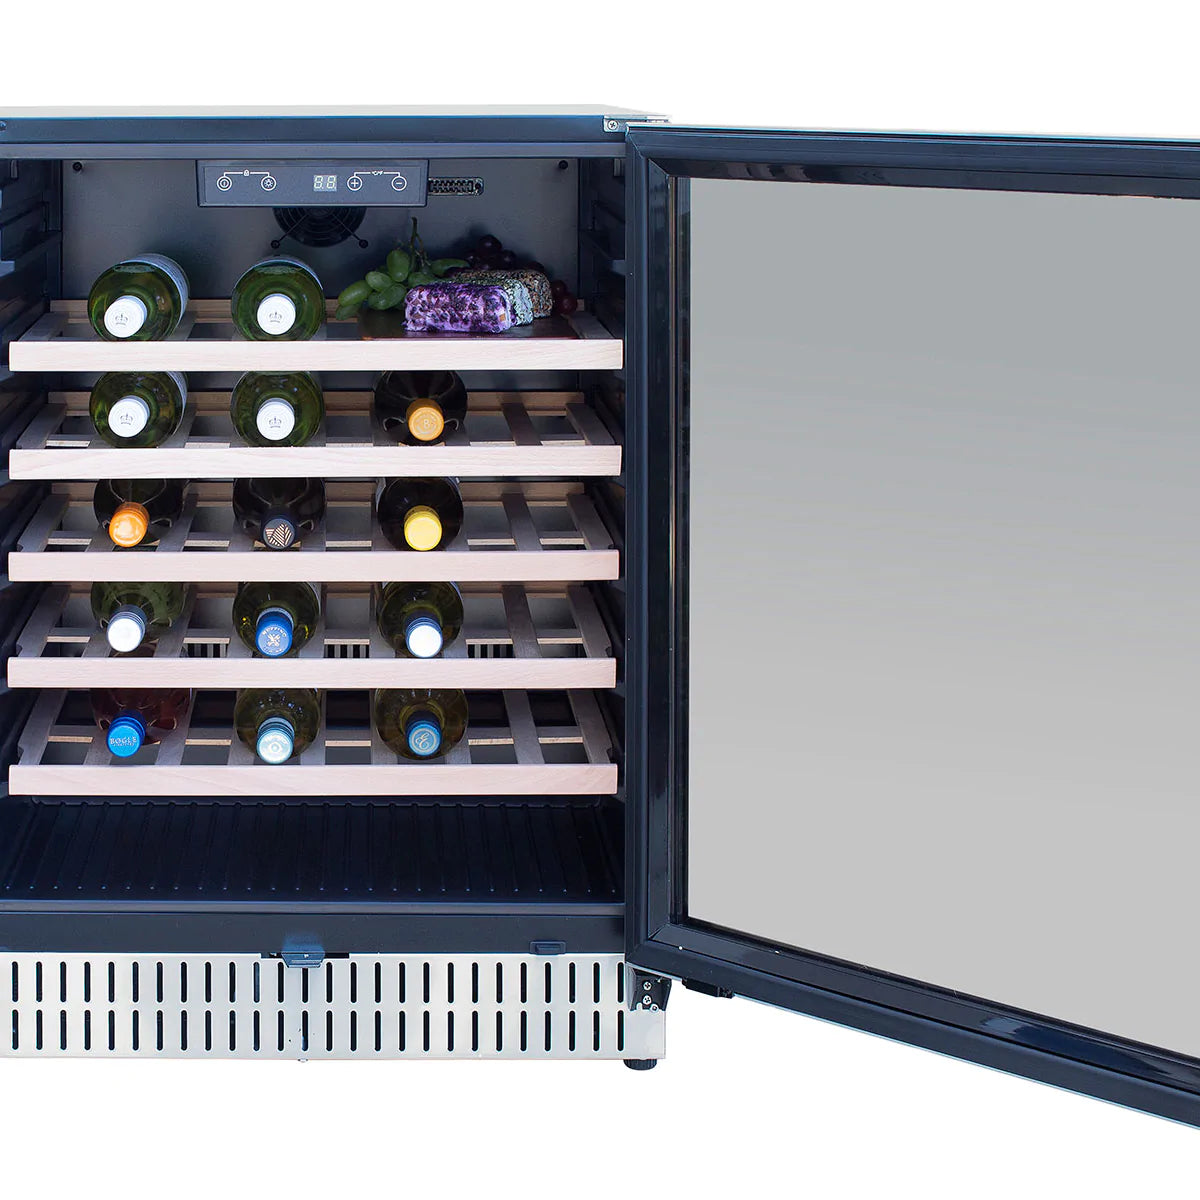 Summerset UL Deluxe Outdoor Rated Built-in Wine Cooler - Upper Livin